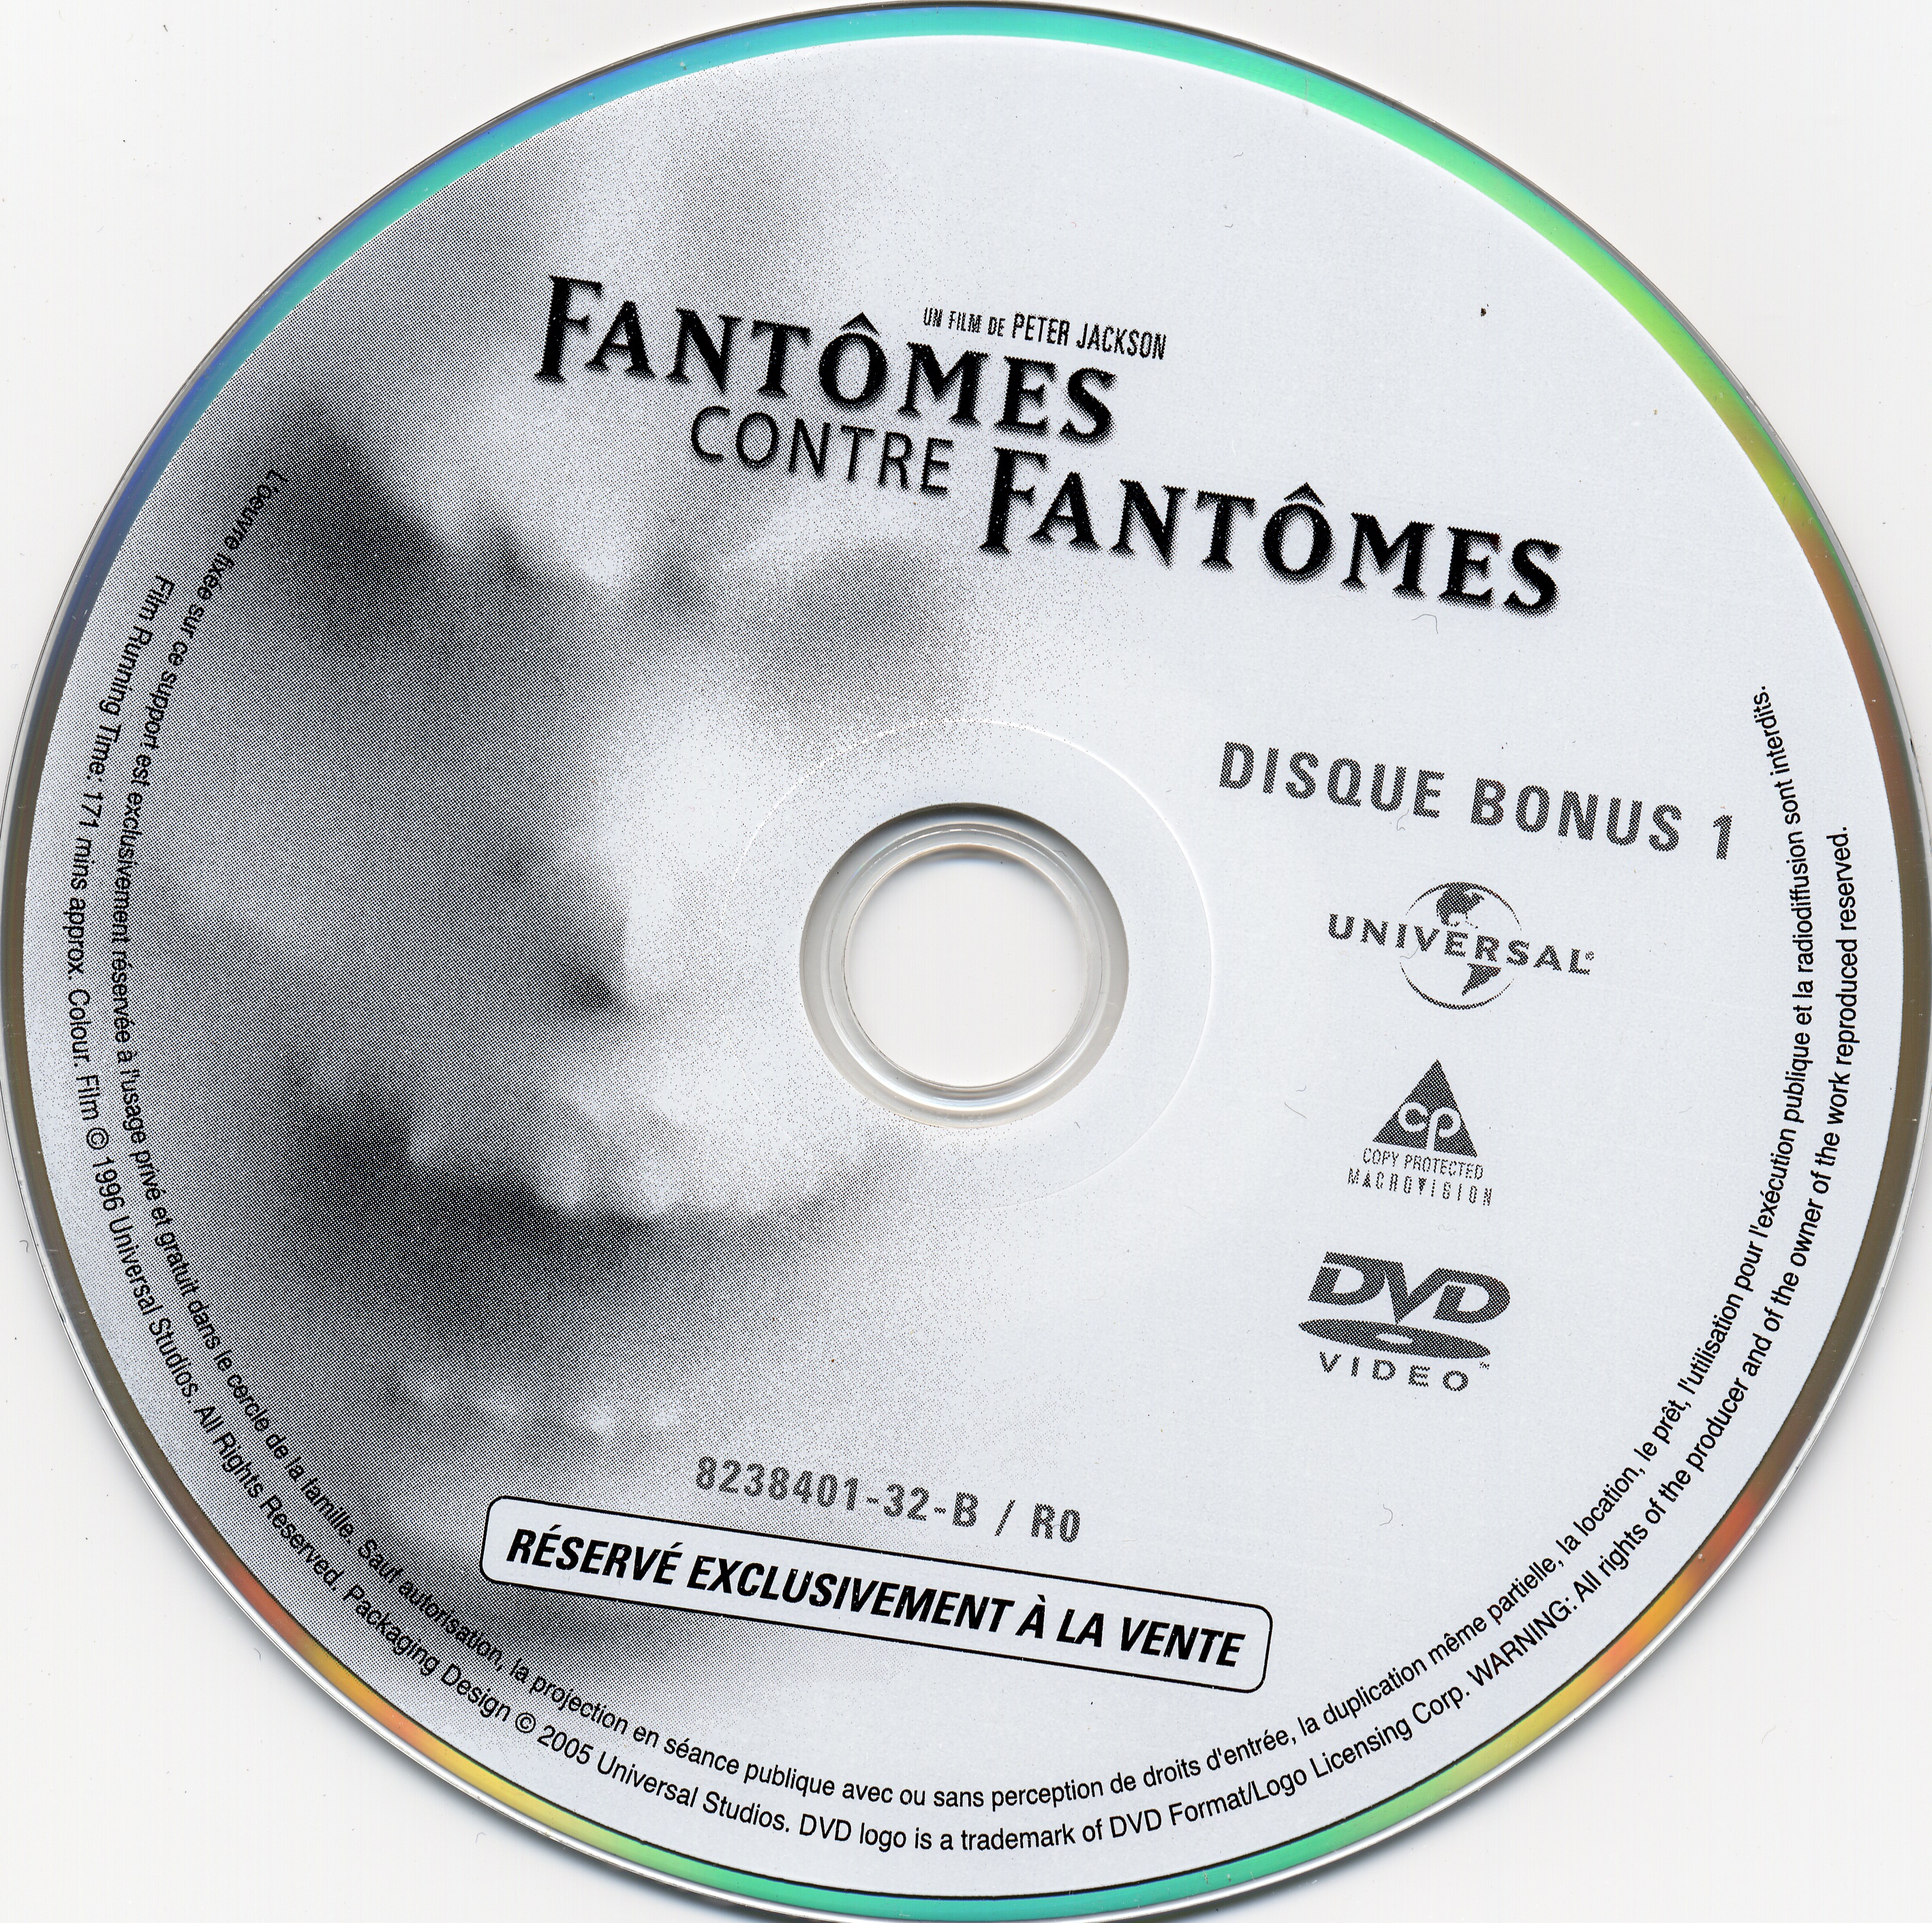 Fantomes contre fantomes DISC 2